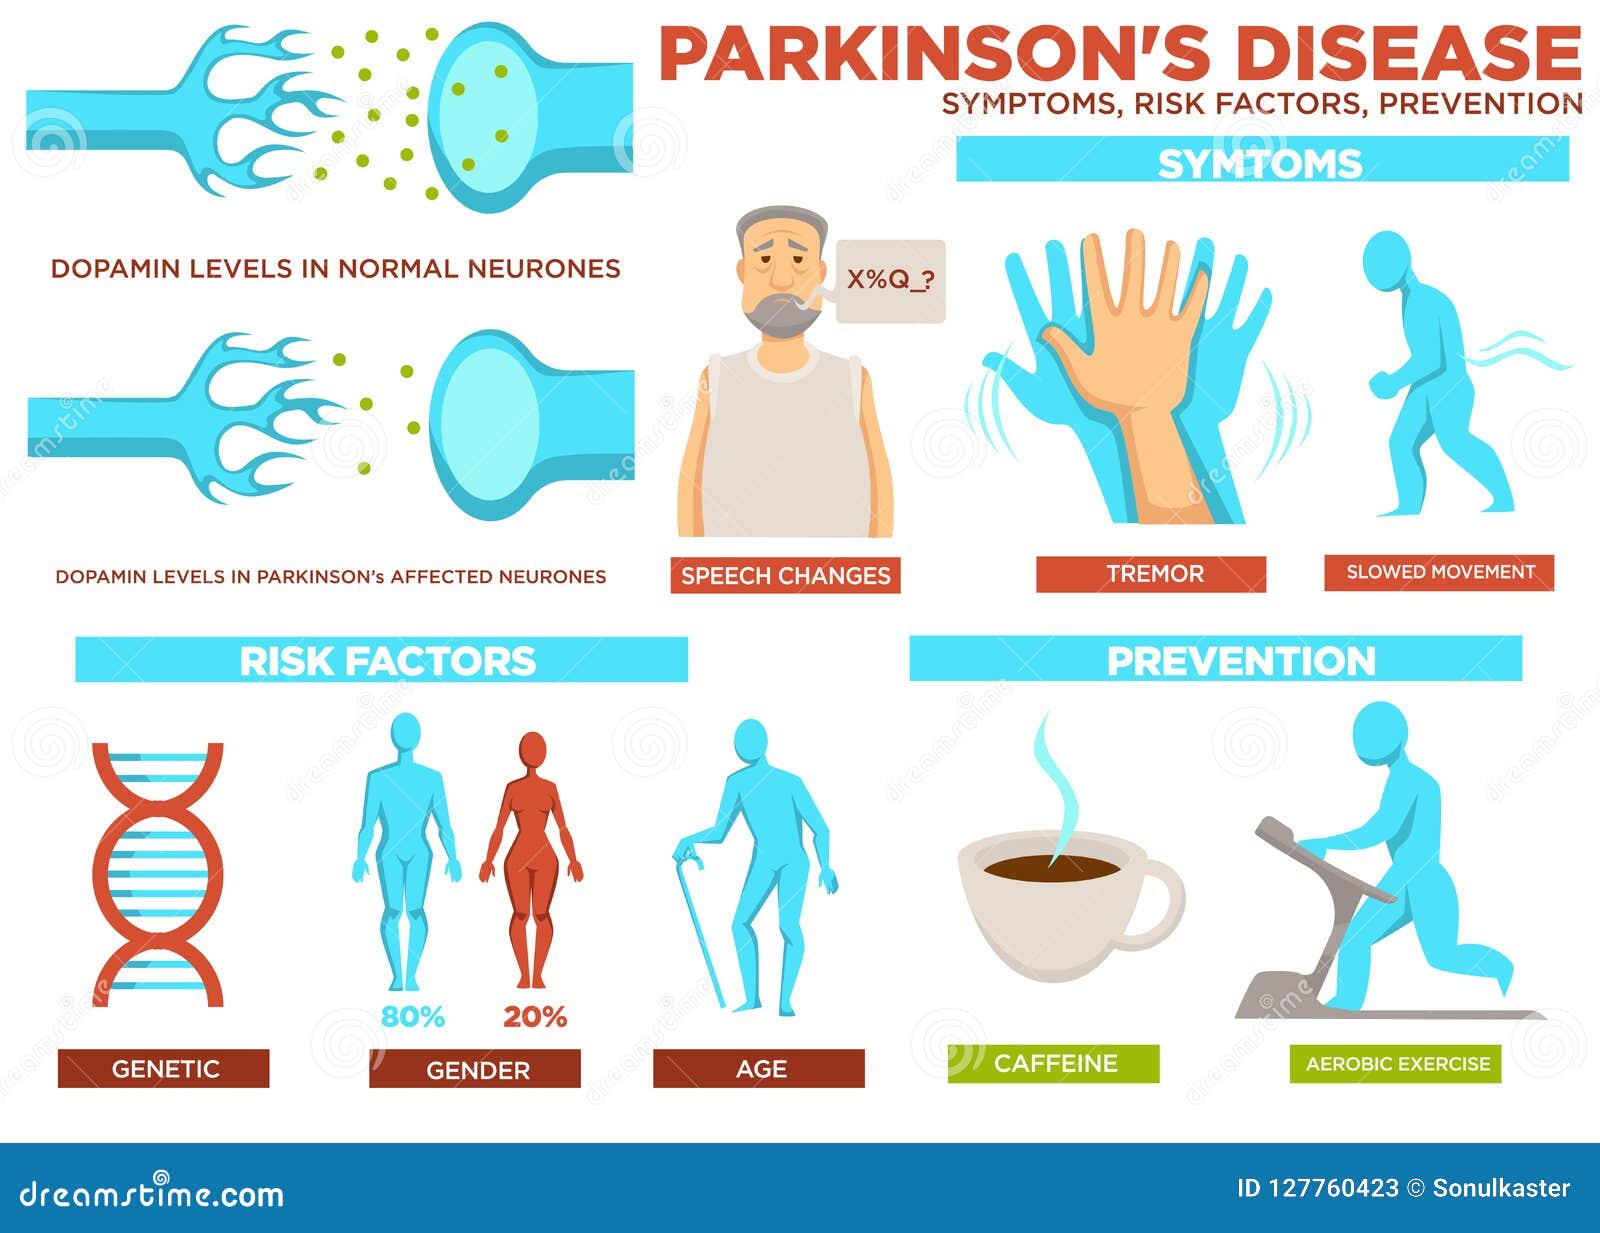 parkinson disease symptom risk factors and prevention 